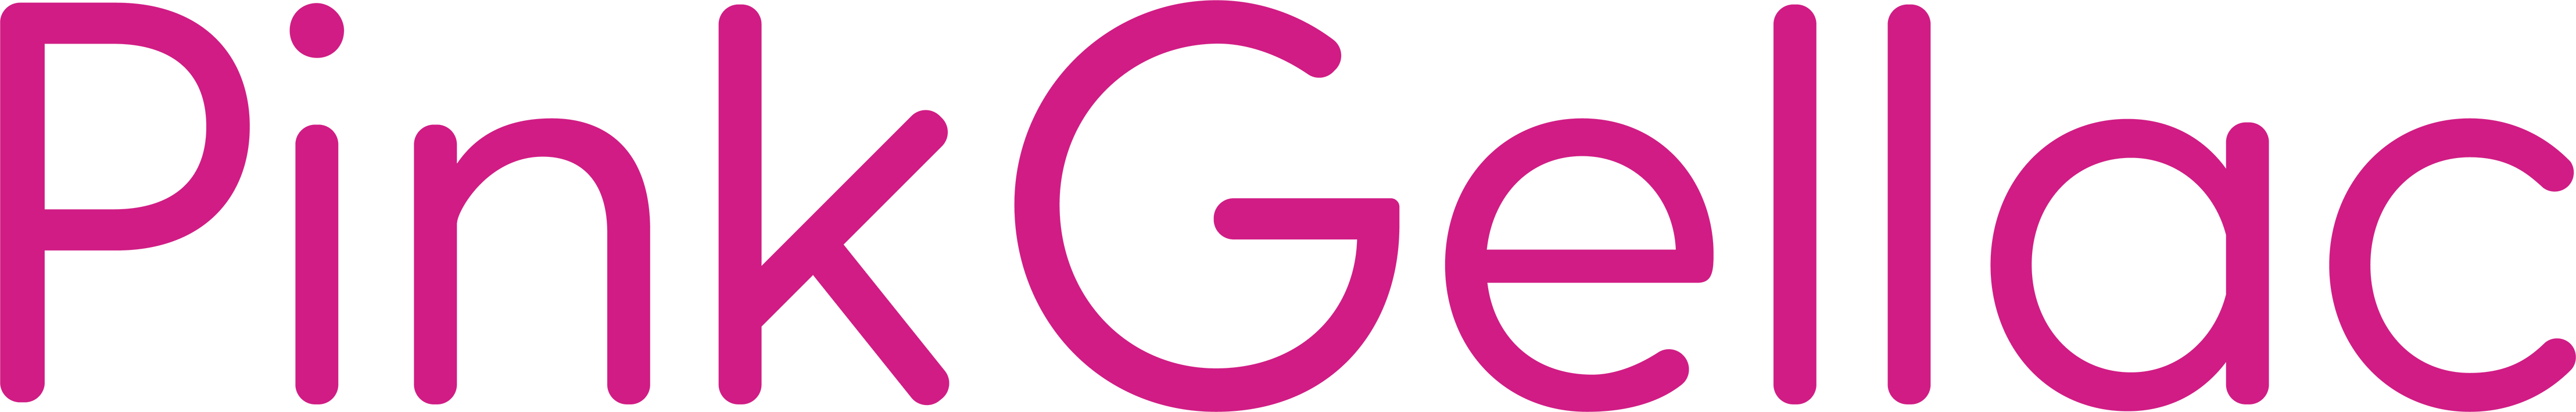 Pink Gellac Logo